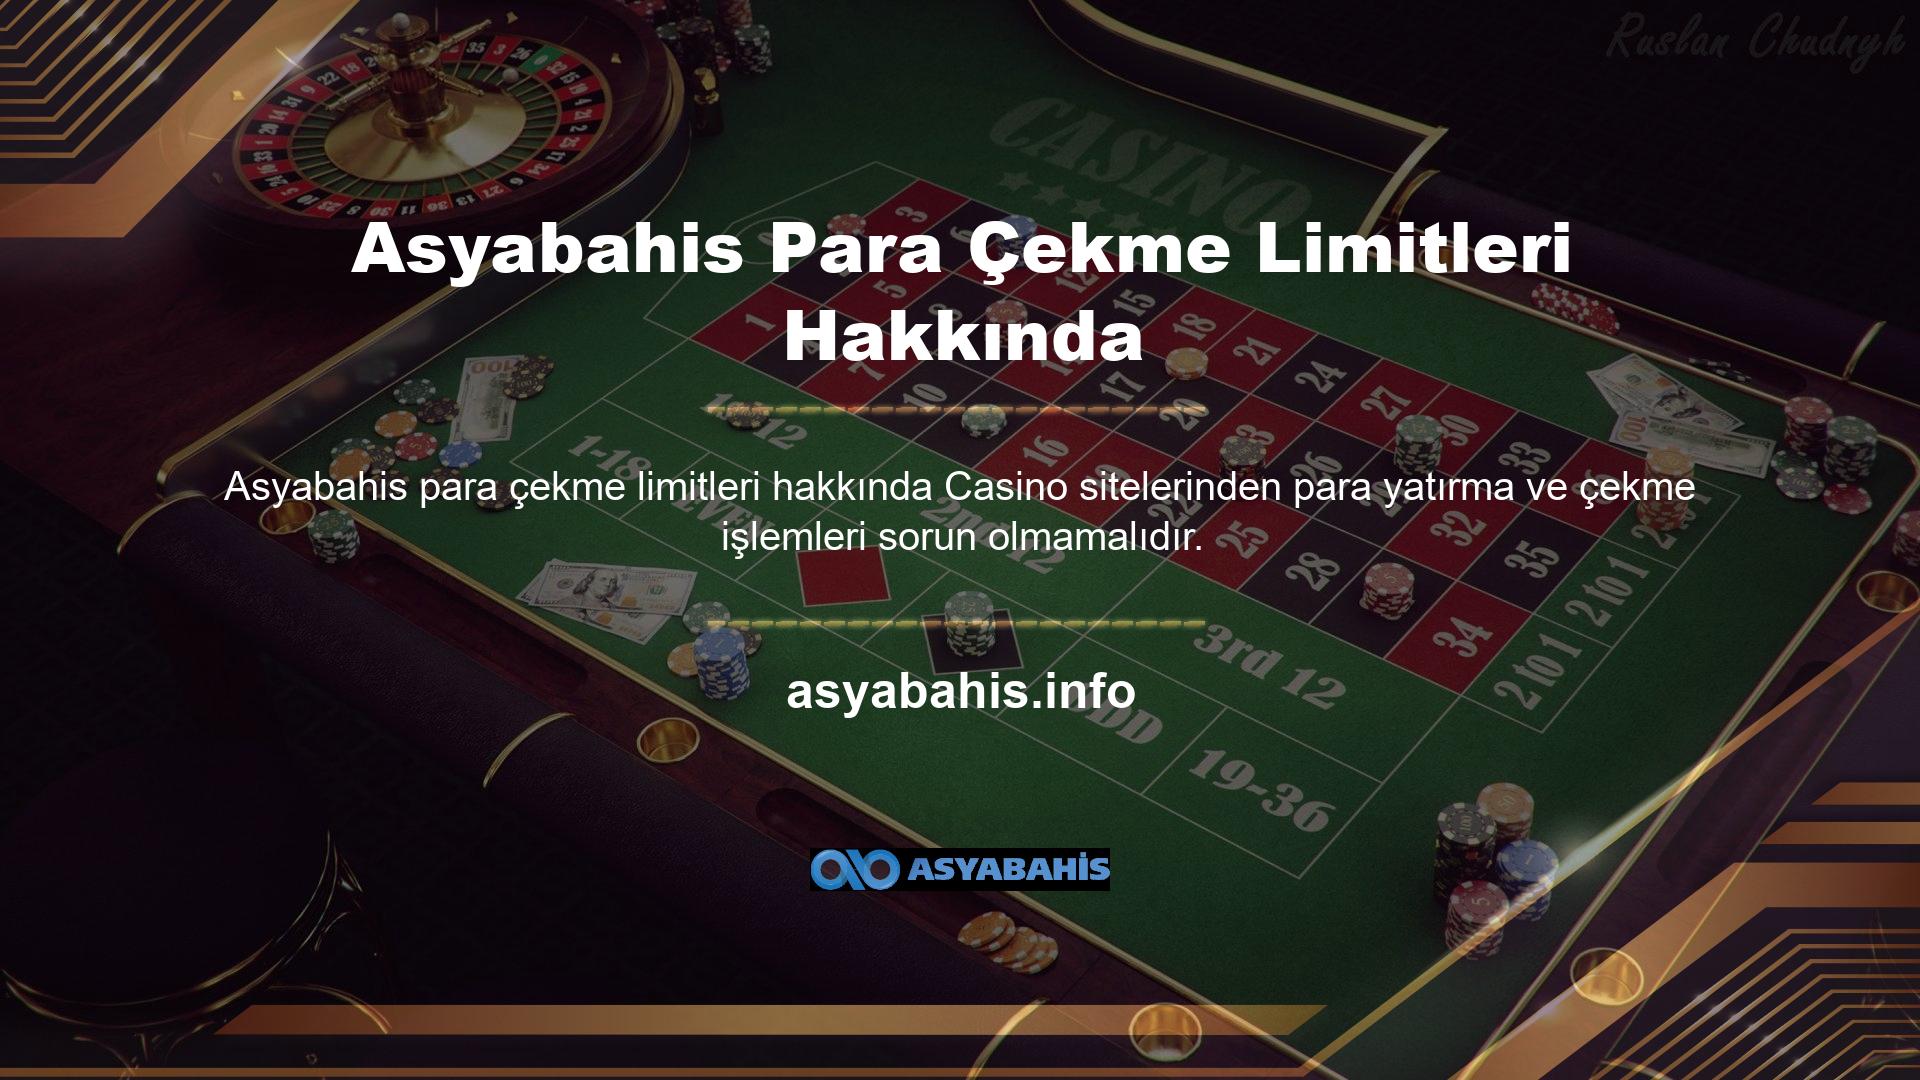 Çevrimiçi casino endüstrisinde var olan sorunların çeşitliliği nedeniyle, oyuncuların yolsuzluğu sorunu vardır